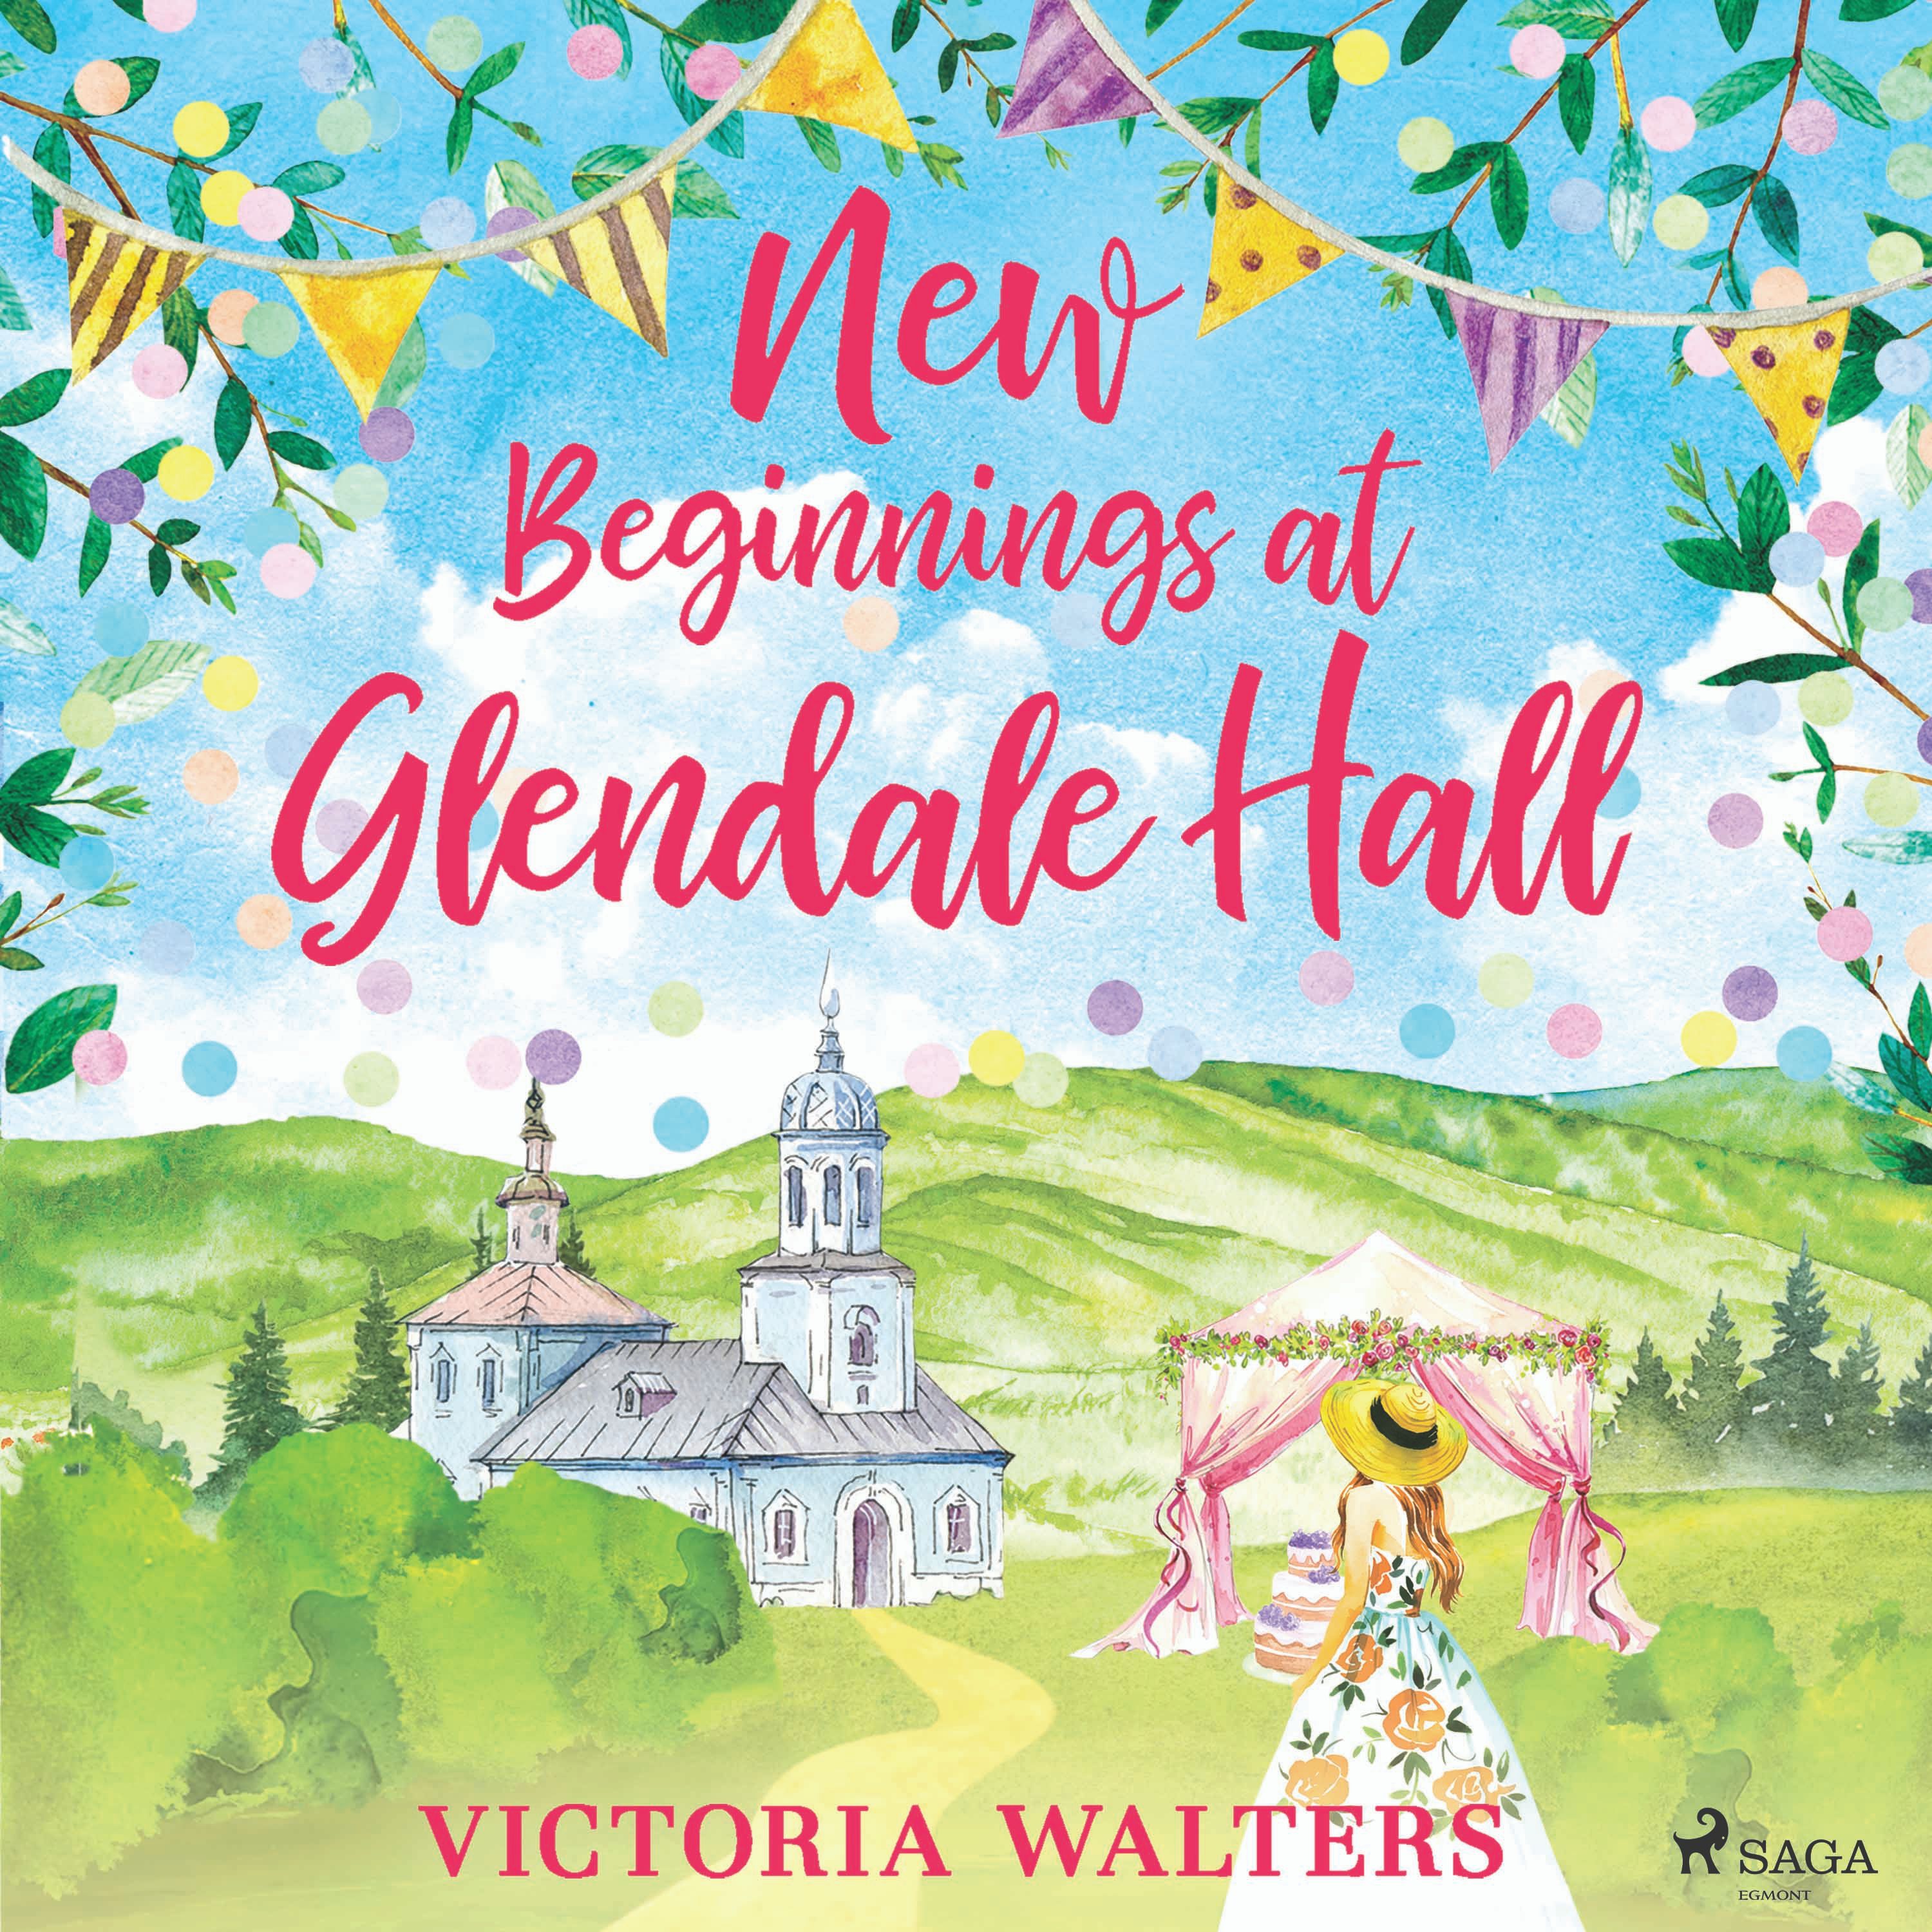 New Beginnings at Glendale Hall, ljudbok av Victoria Walters